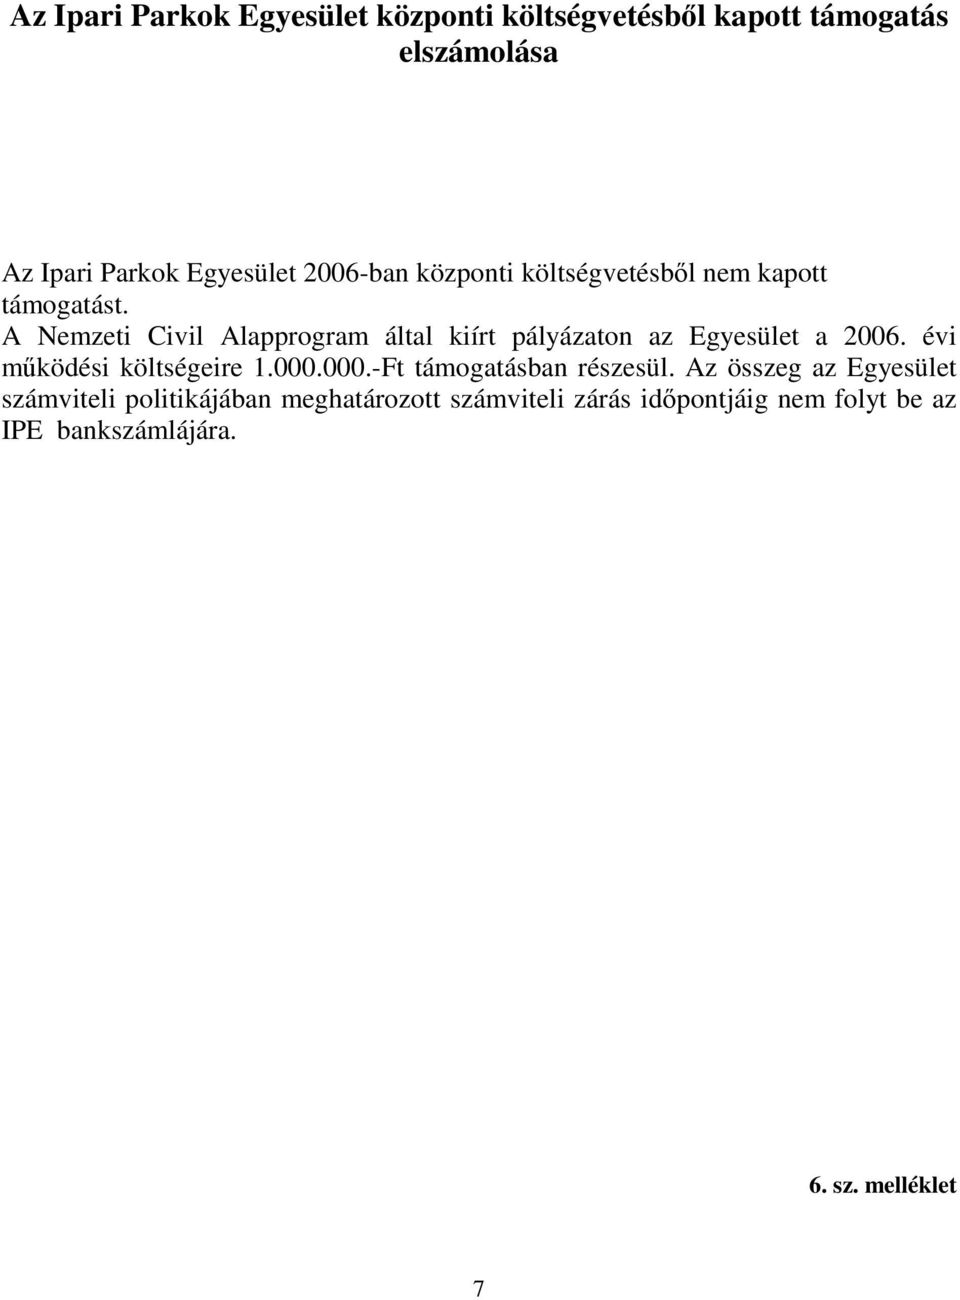 A Nemzeti Civil Alapprogram által kiírt pályázaton az Egyesület a 2006. évi mködési költségeire 1.000.